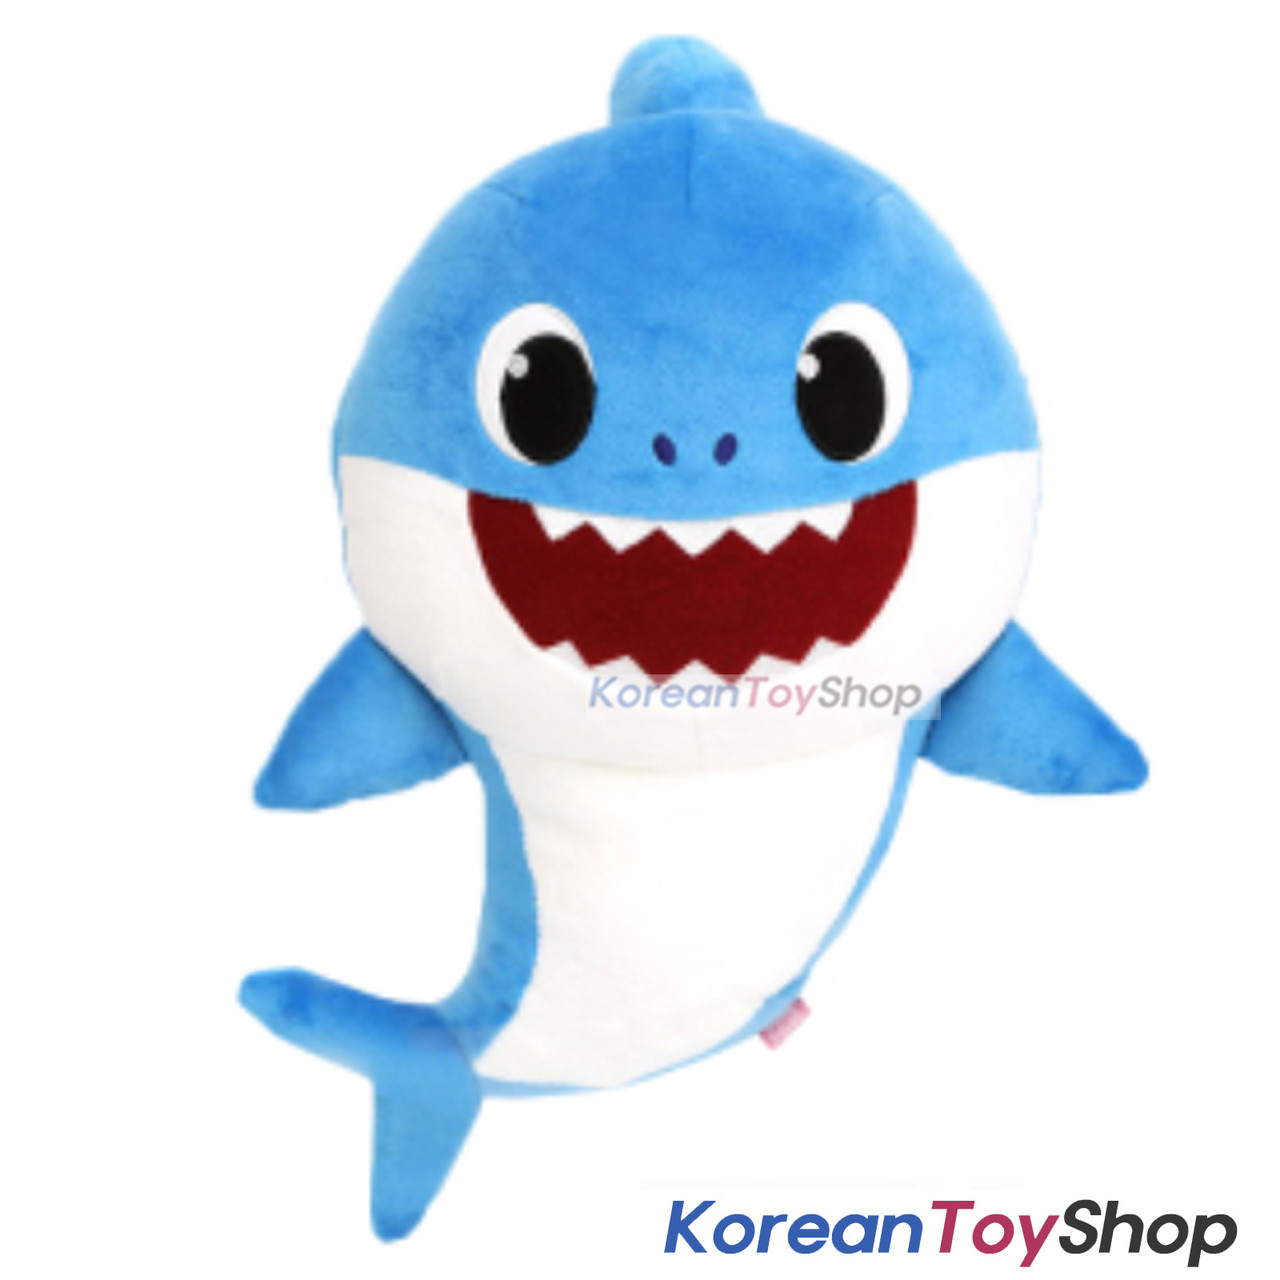 cute shark toy